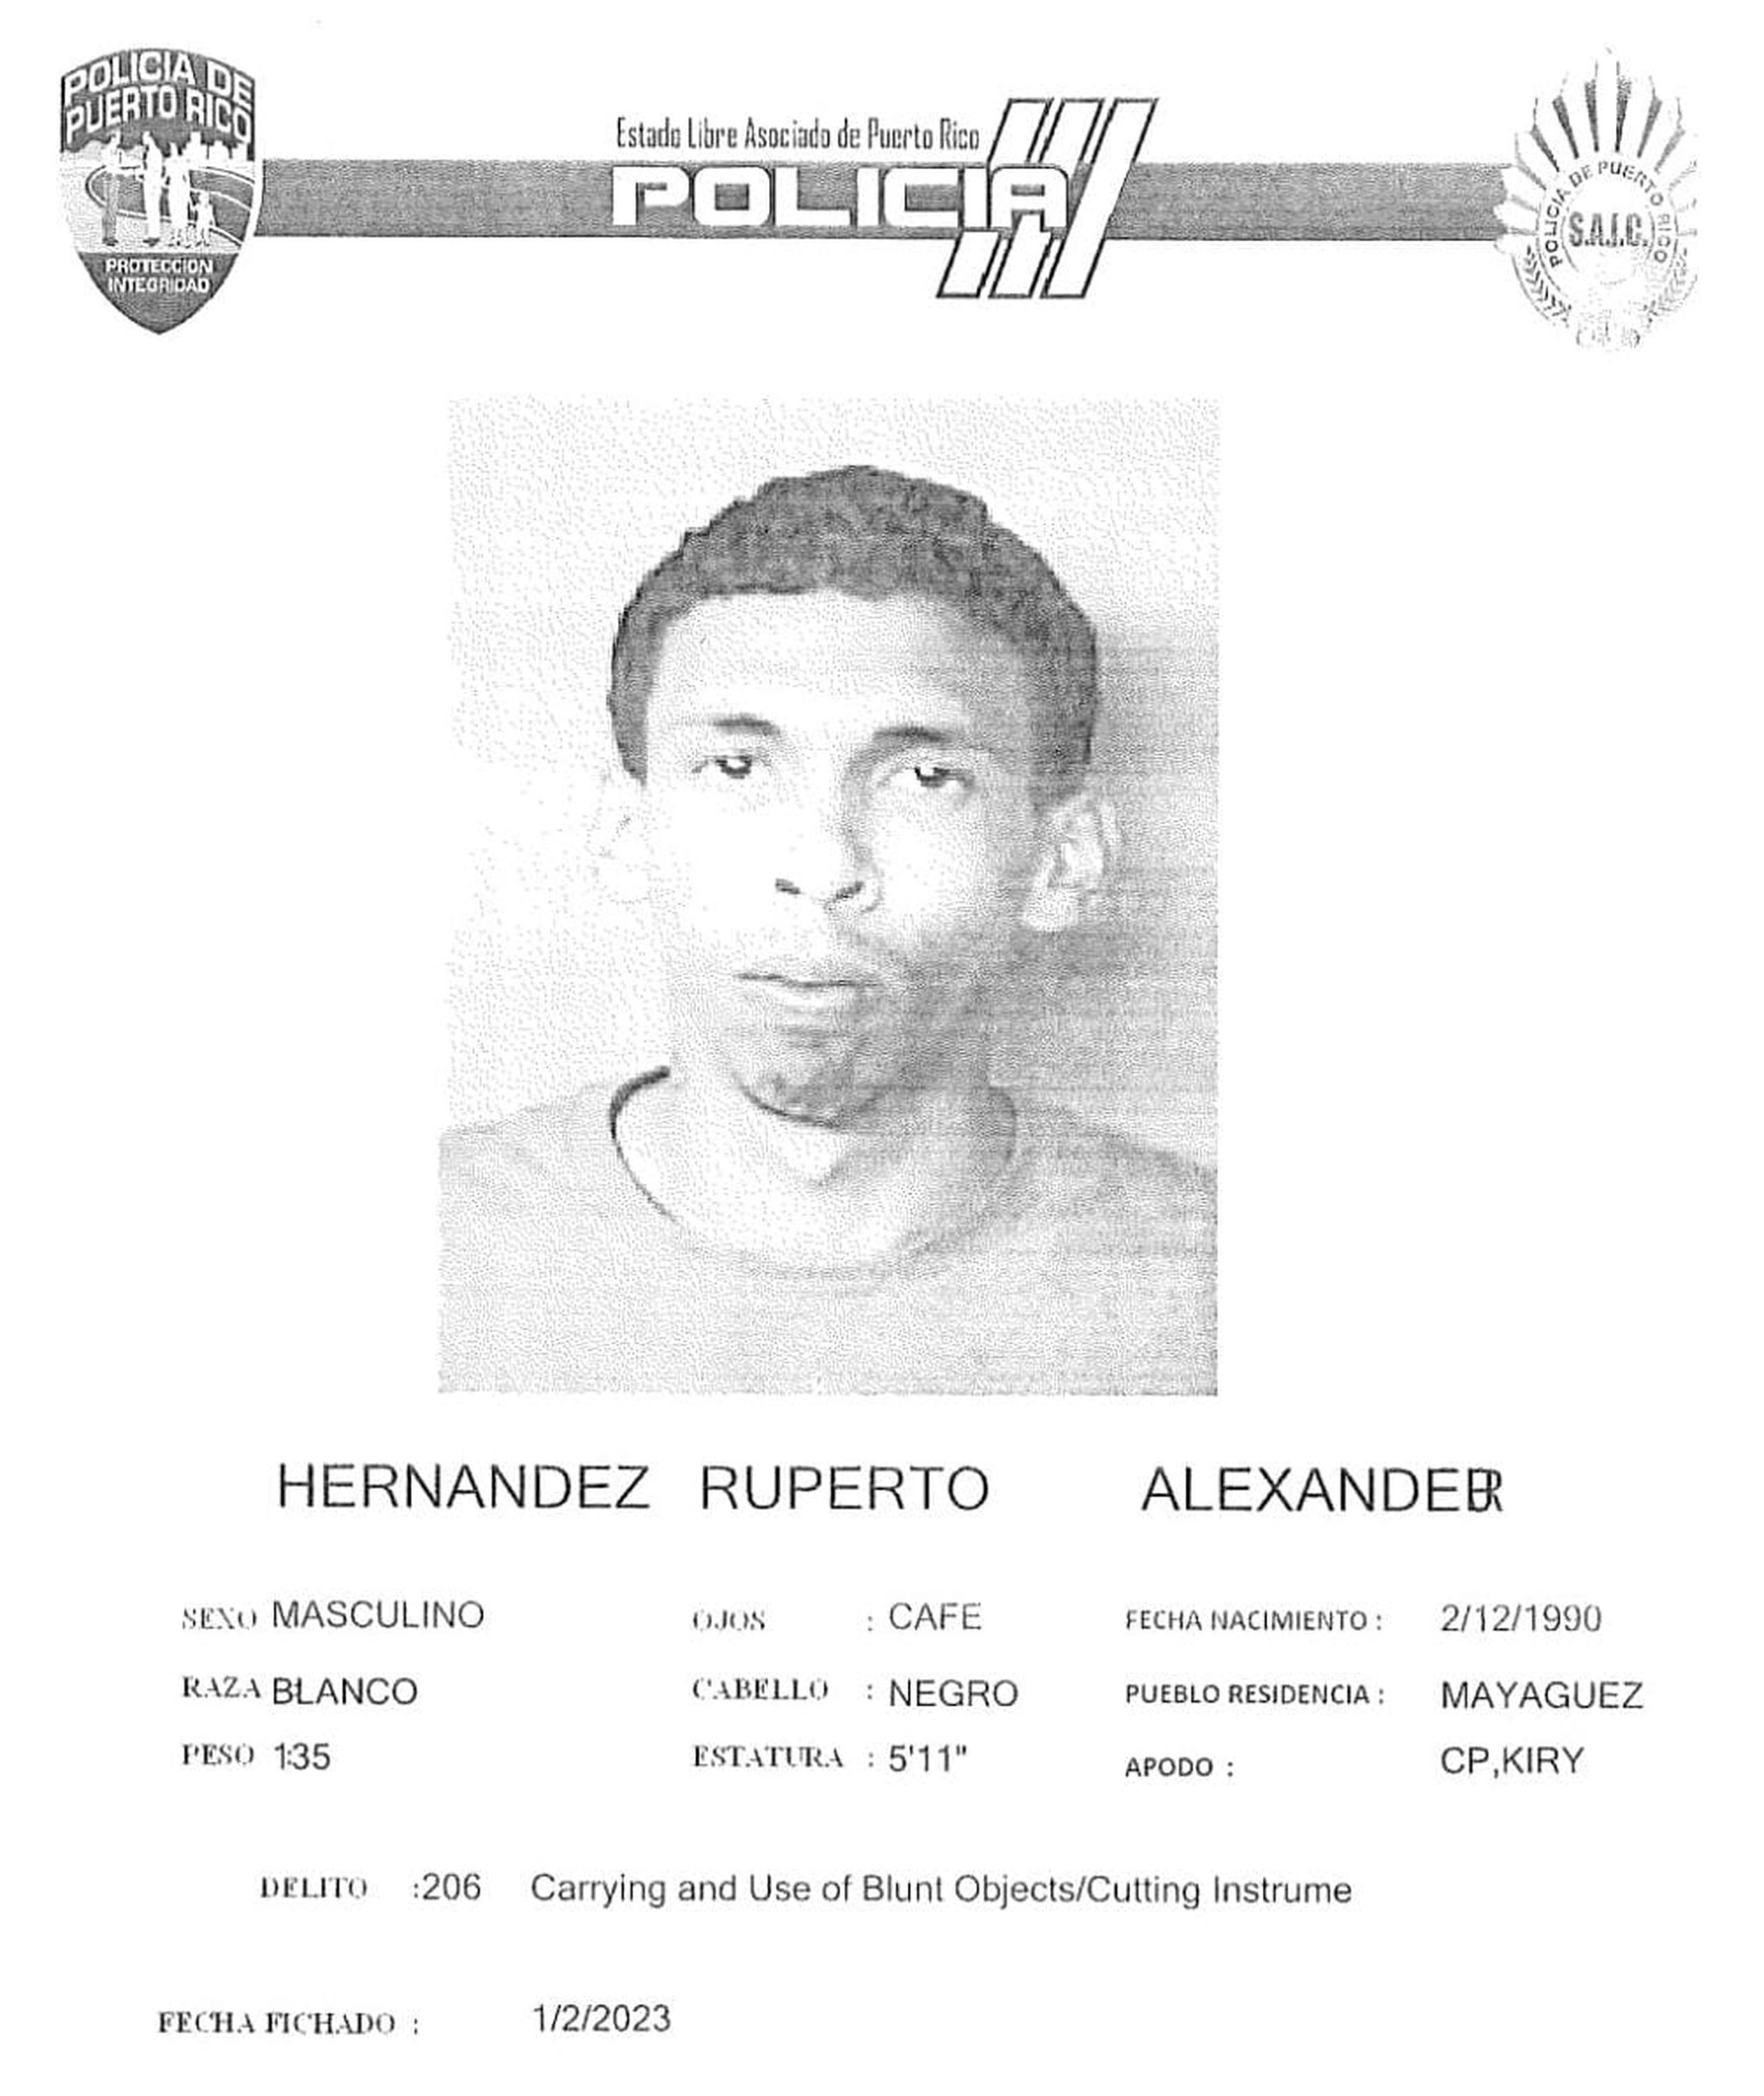 Alexander J. Hernández Ruperto de 32 años, fue encarcelado en el complejo correccional de Ponce, al no prestar la fianza de $150,000.00.